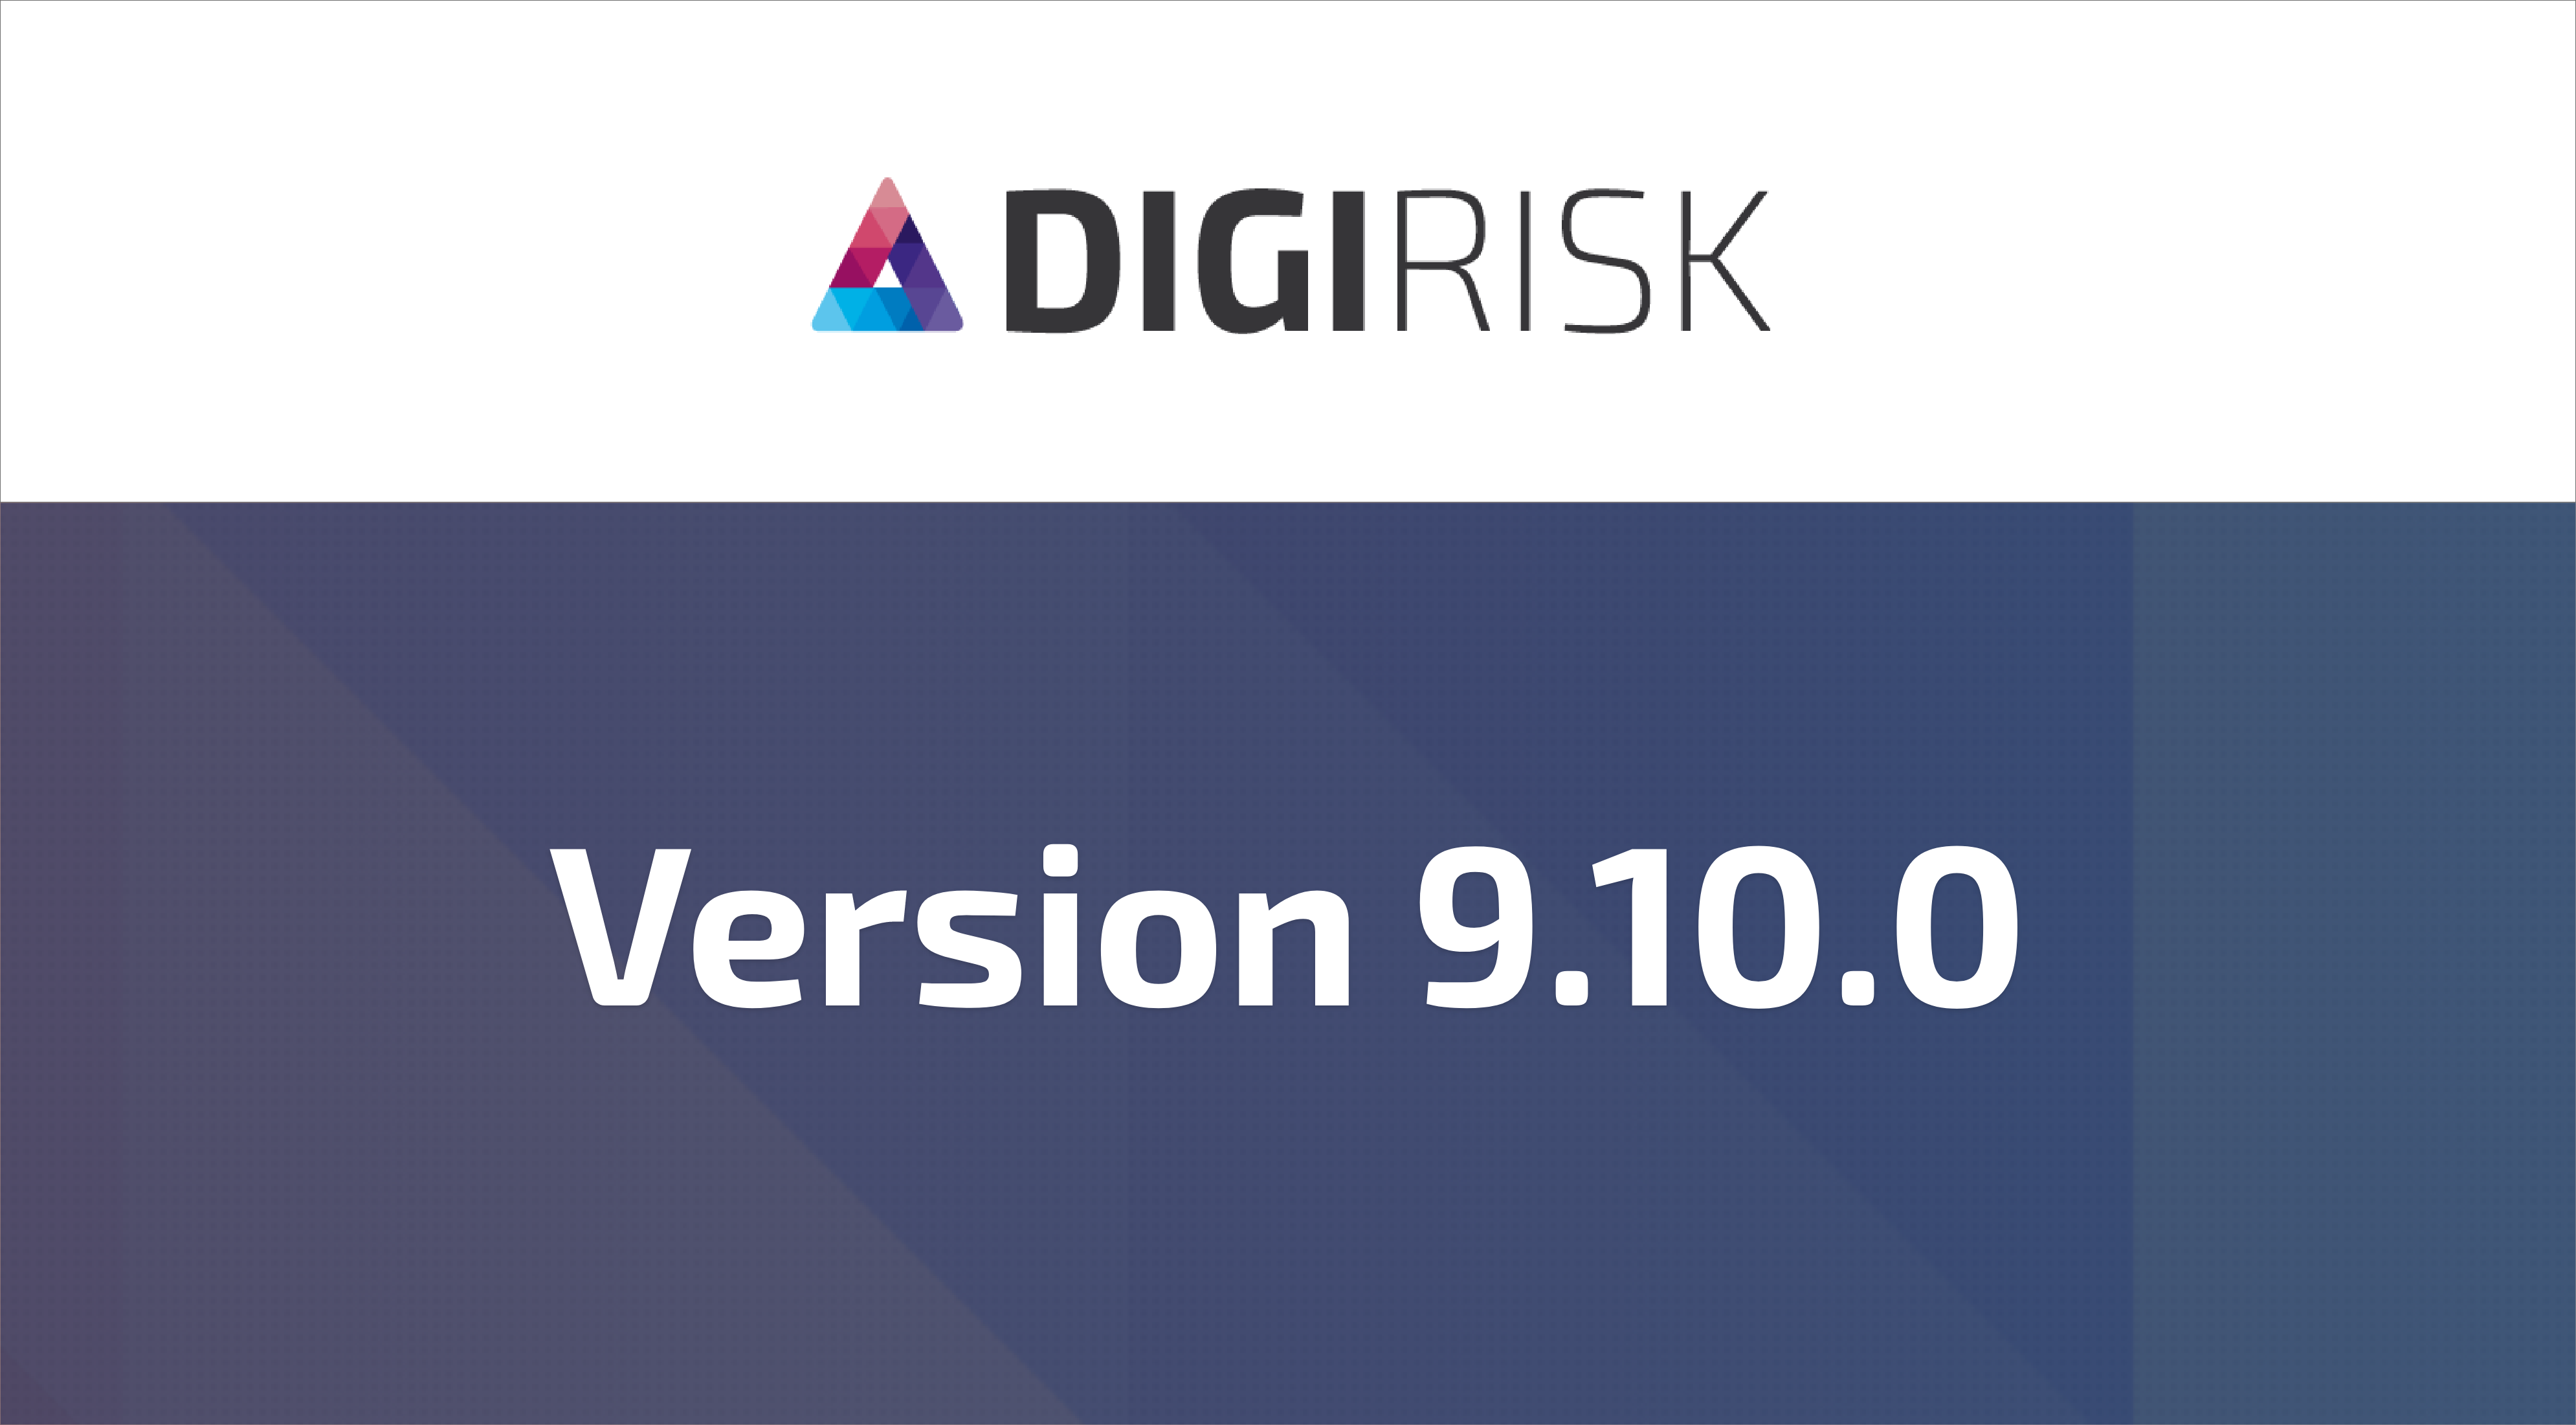 DigiRisk version 9.10.0